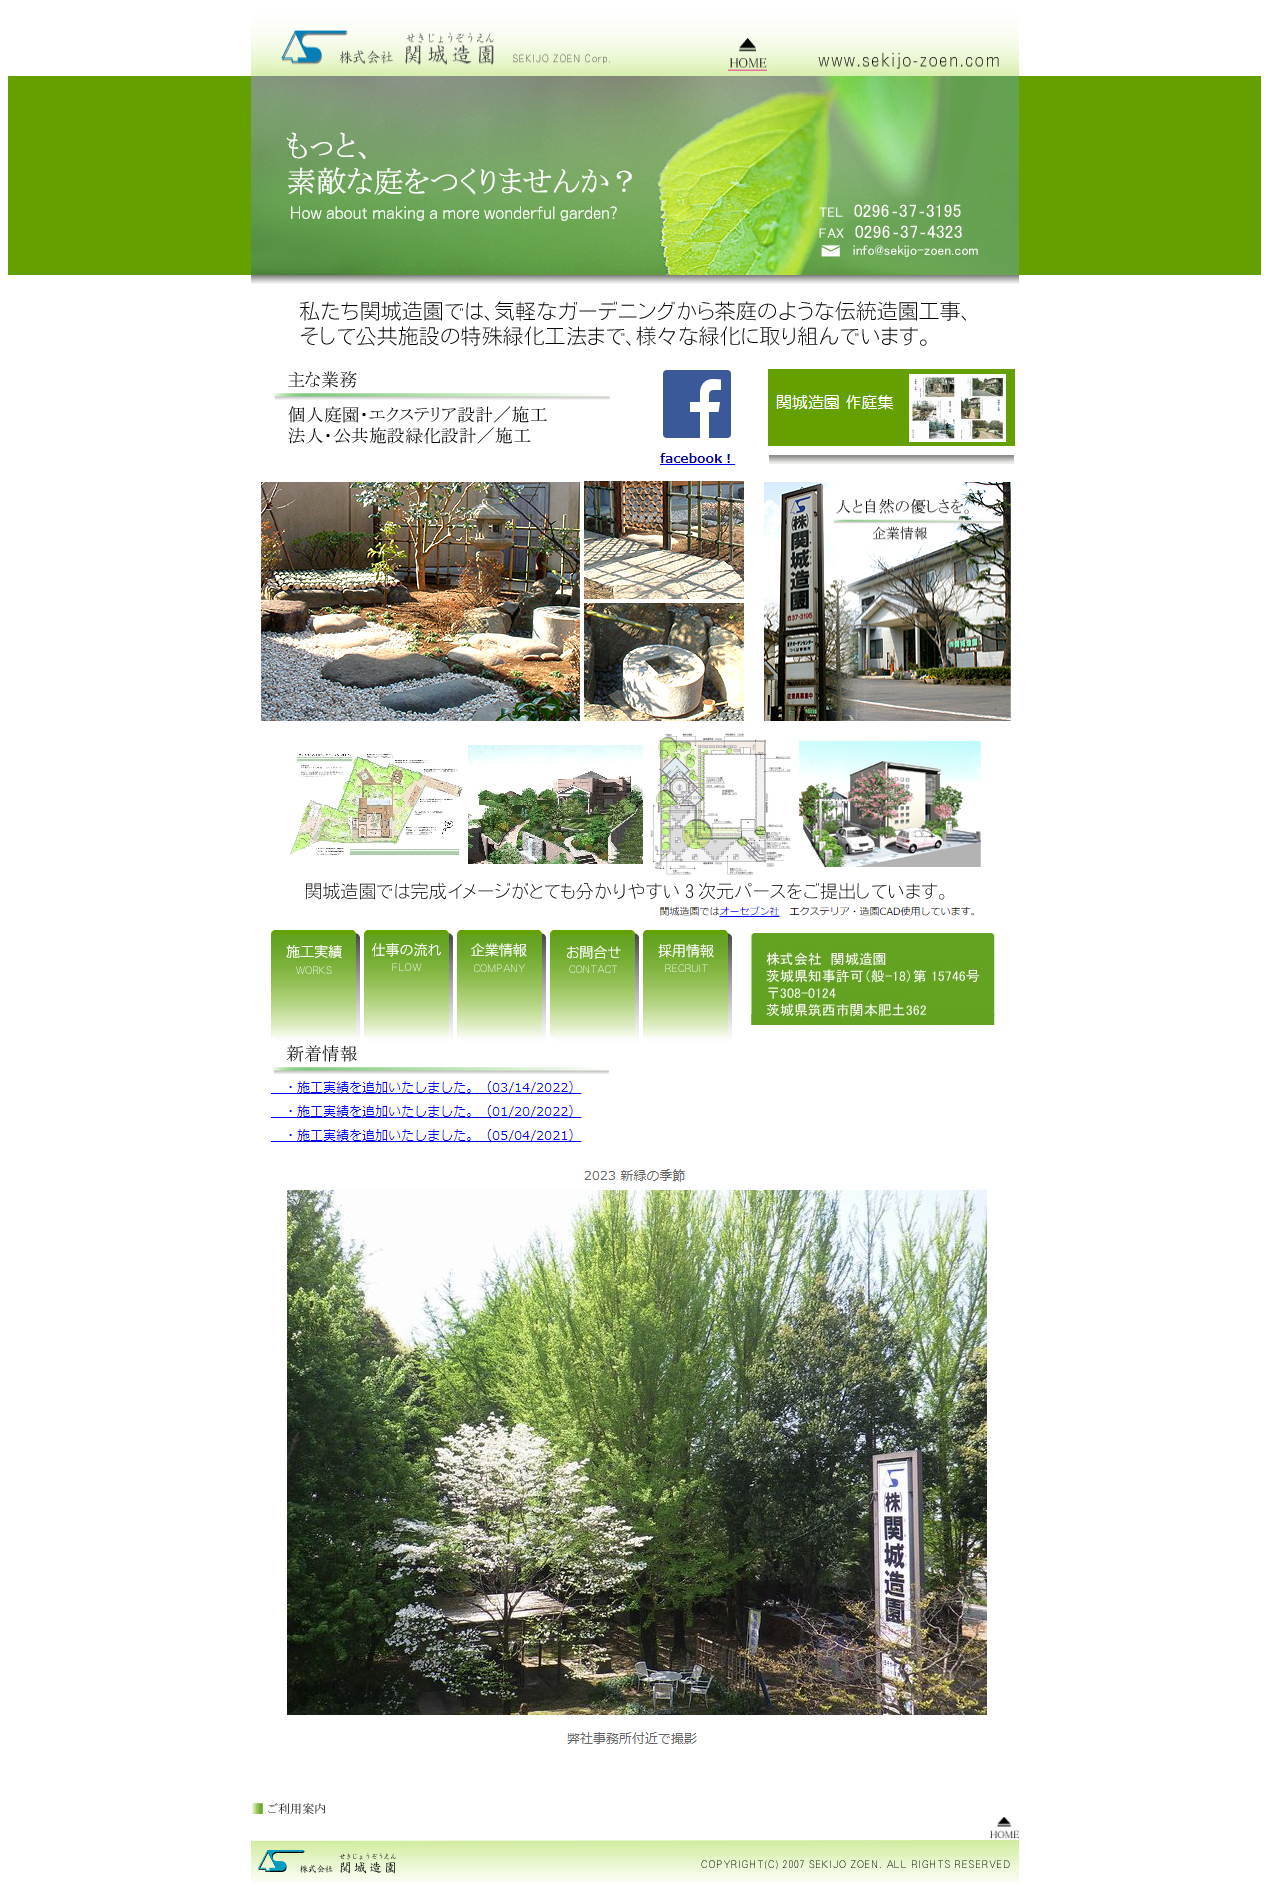 株式会社関城造園様オフィシャルウェブサイト